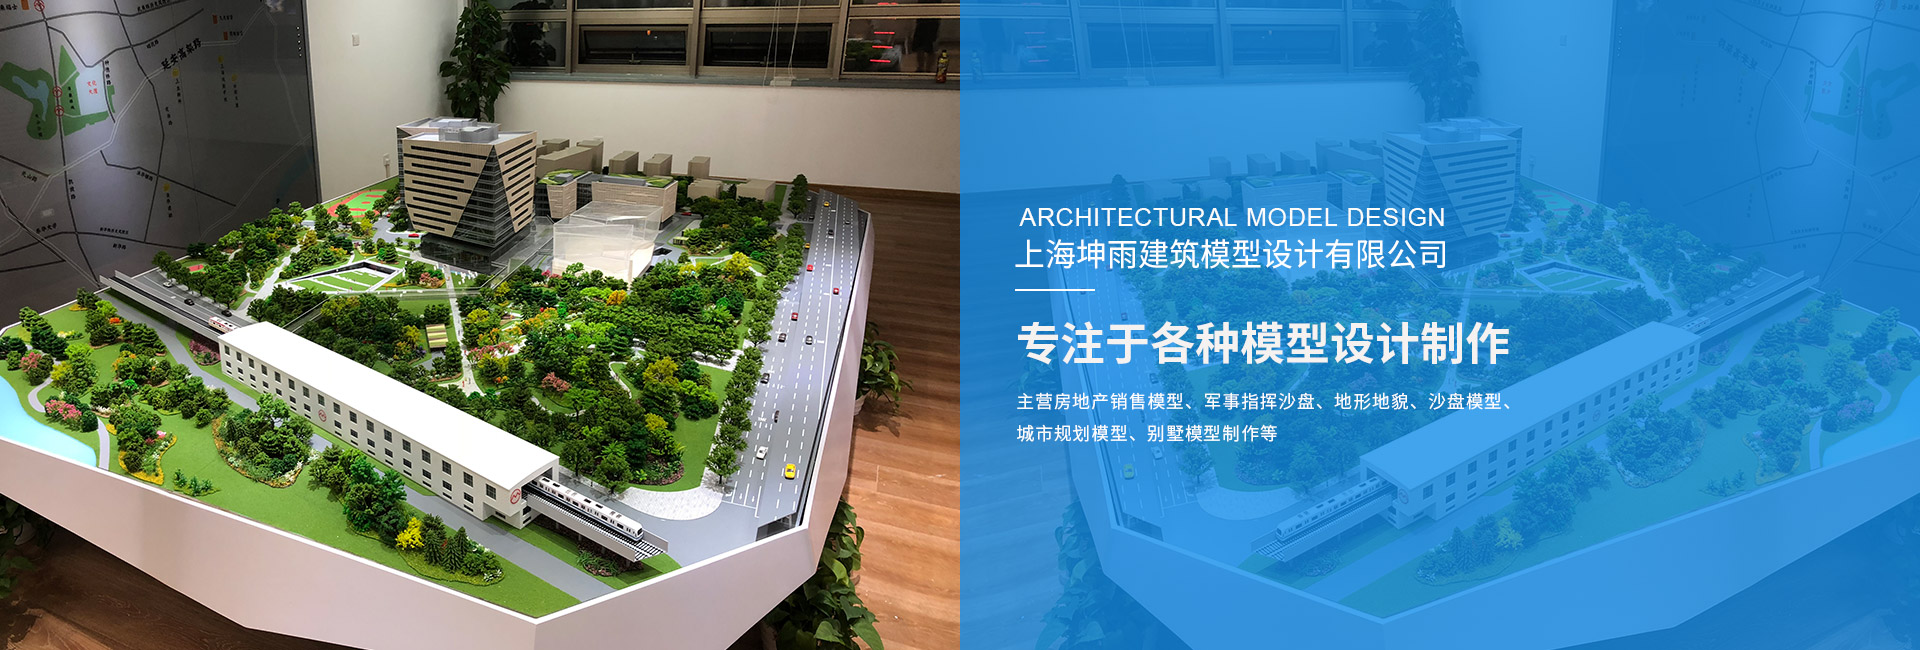 ?上海坤雨建筑模型設計有限公司